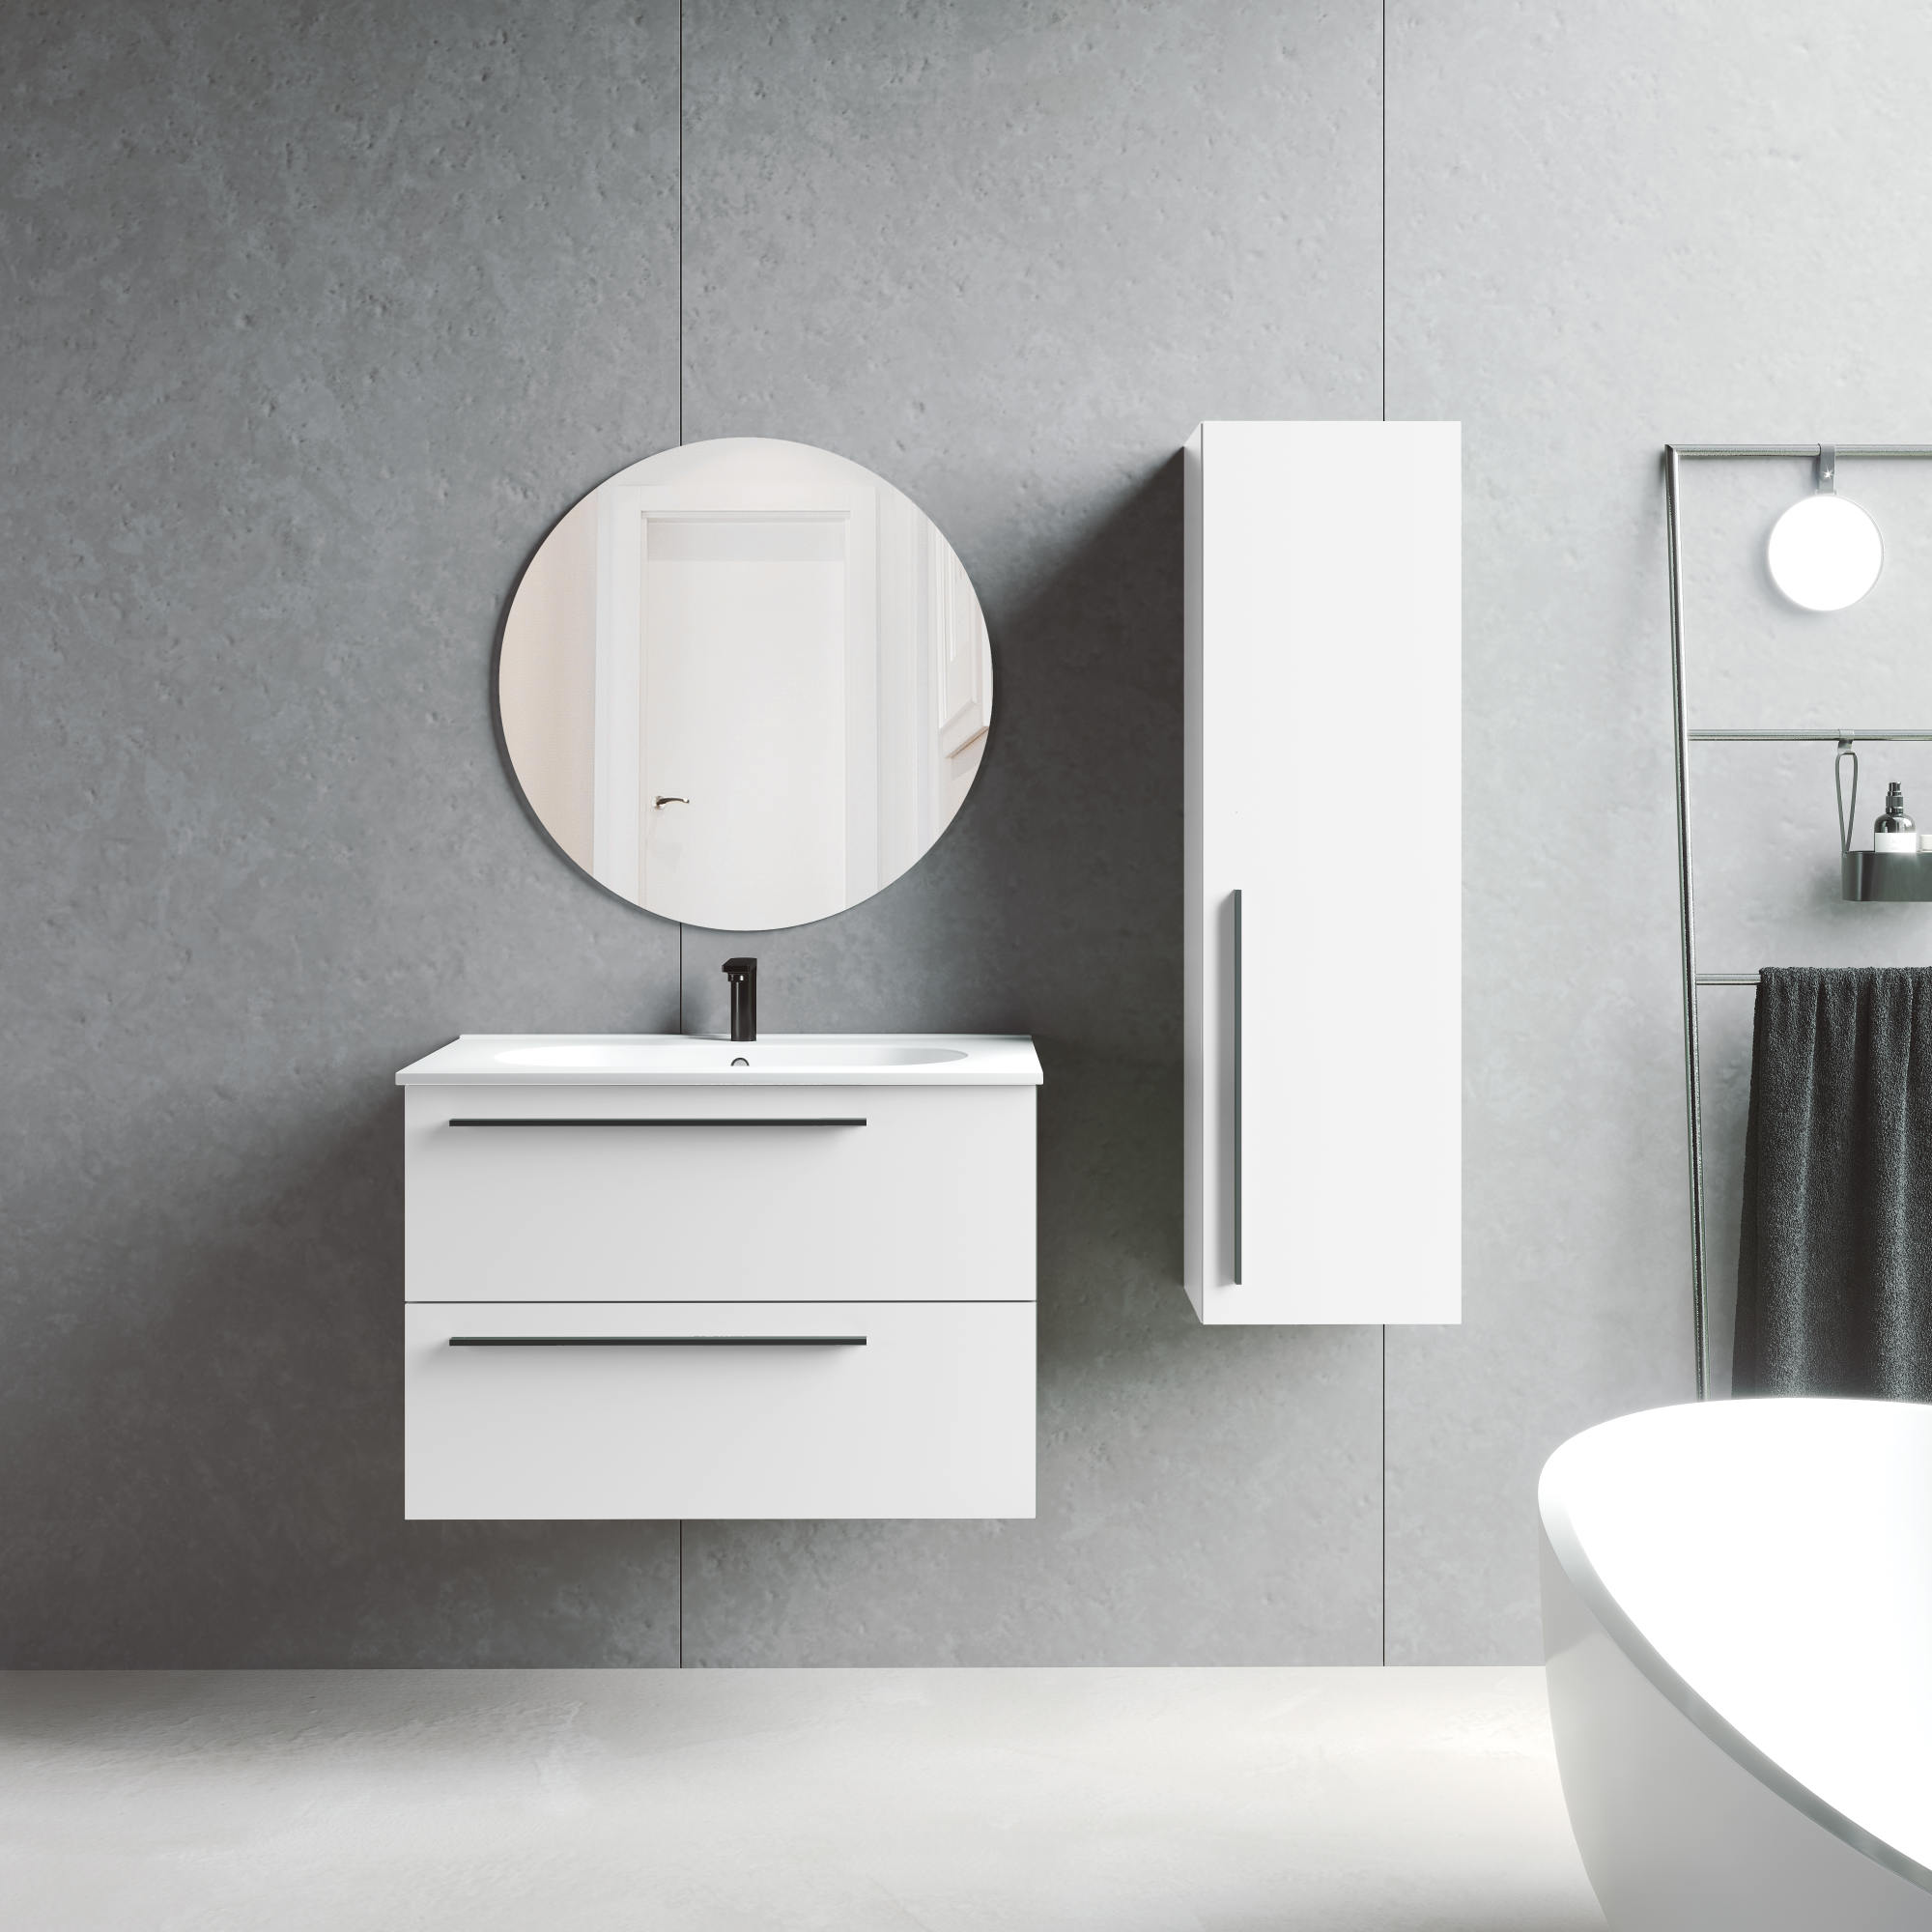 Muebles para lavabo modernos :: Imágenes y fotos